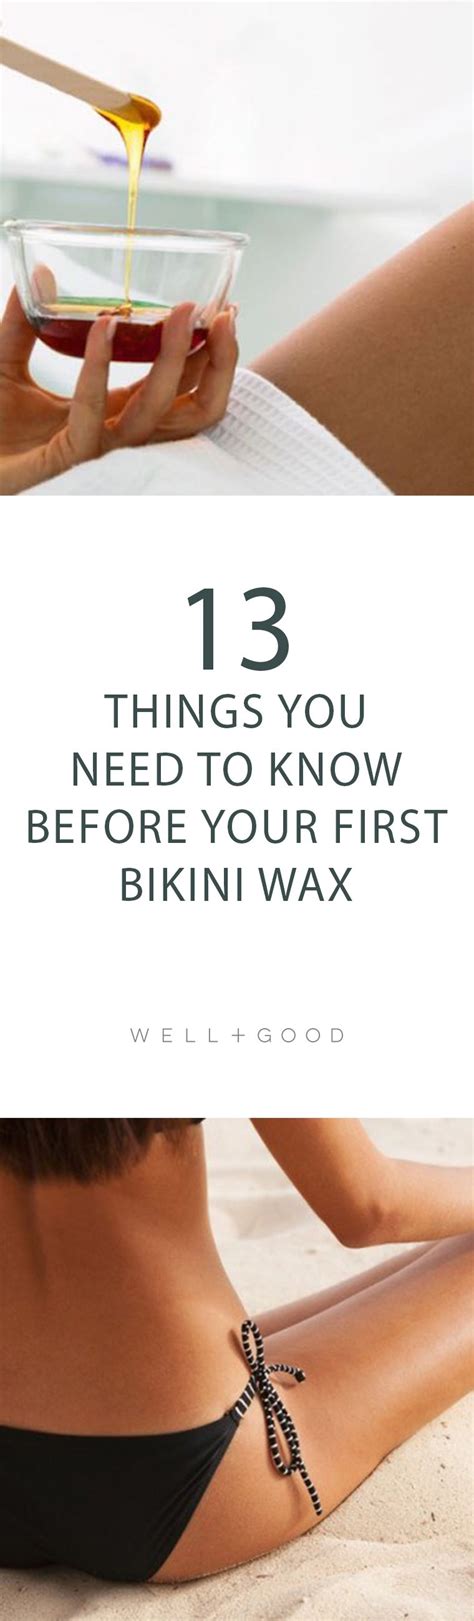 How To Prep For A Bikini Wax Well Good Bikini Wax Waxing Tips Brazilian Bikini Wax